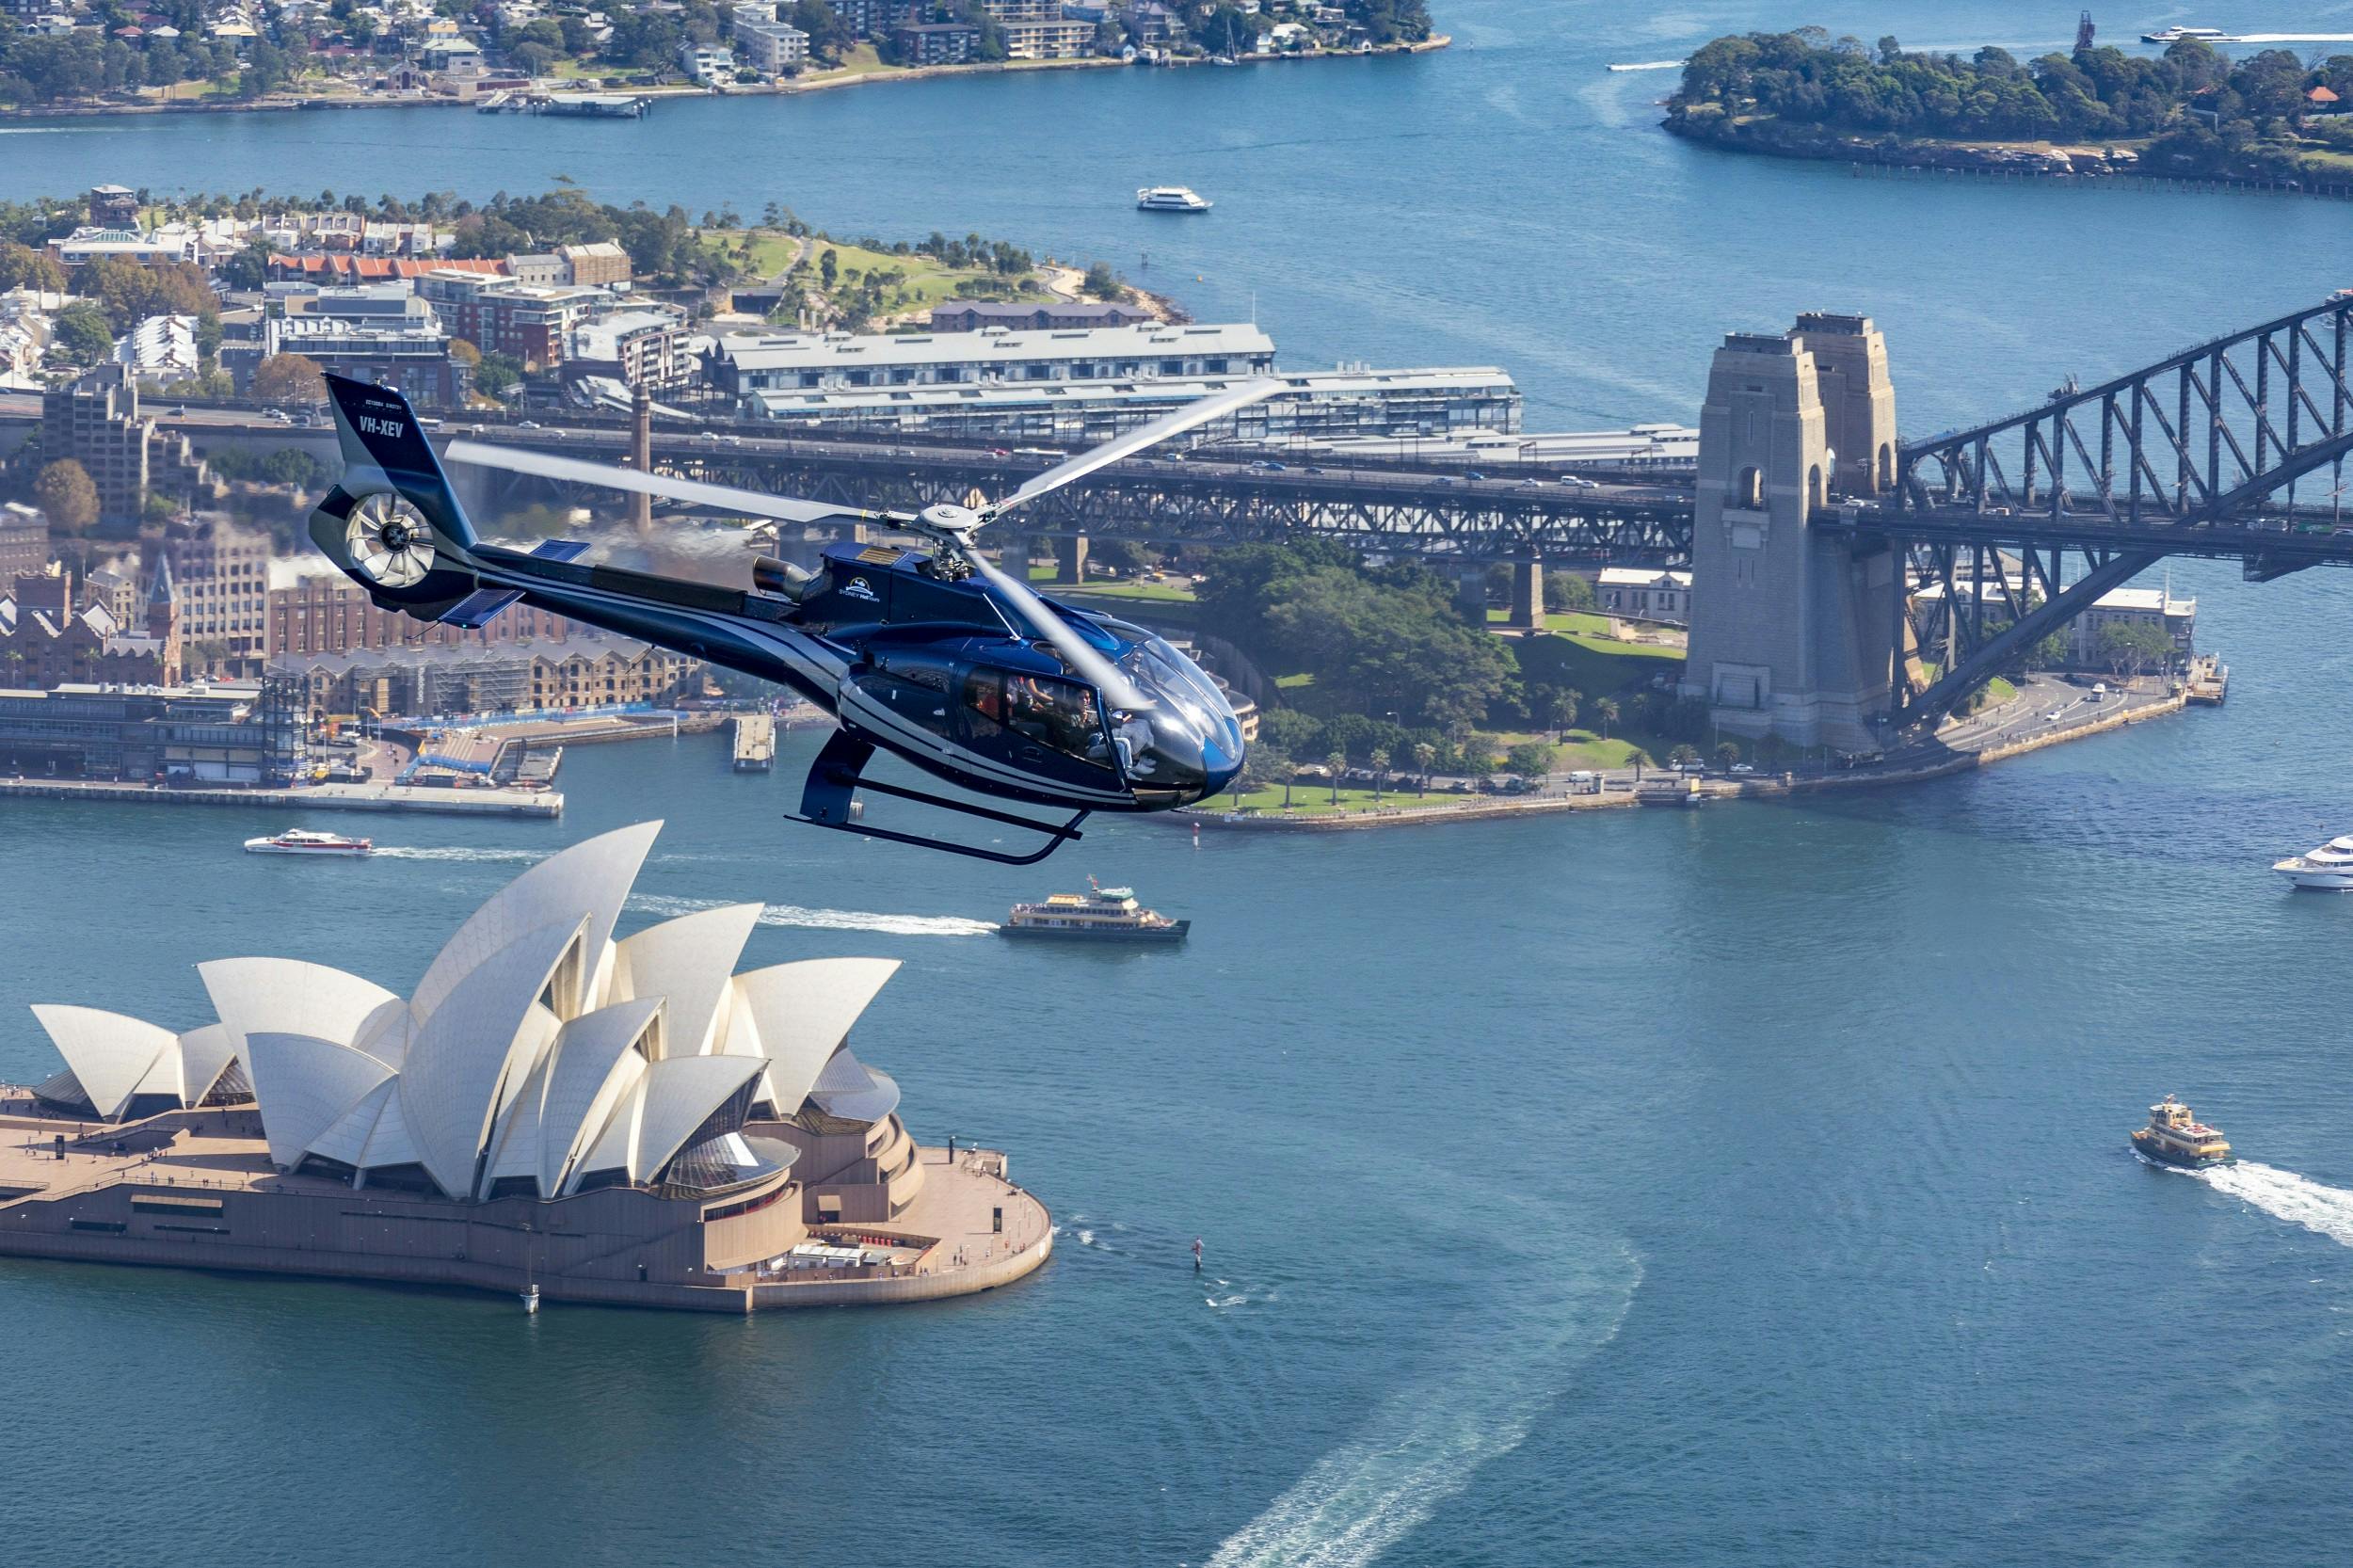 20-minütiger Rundflug über den Hafen von Sydney